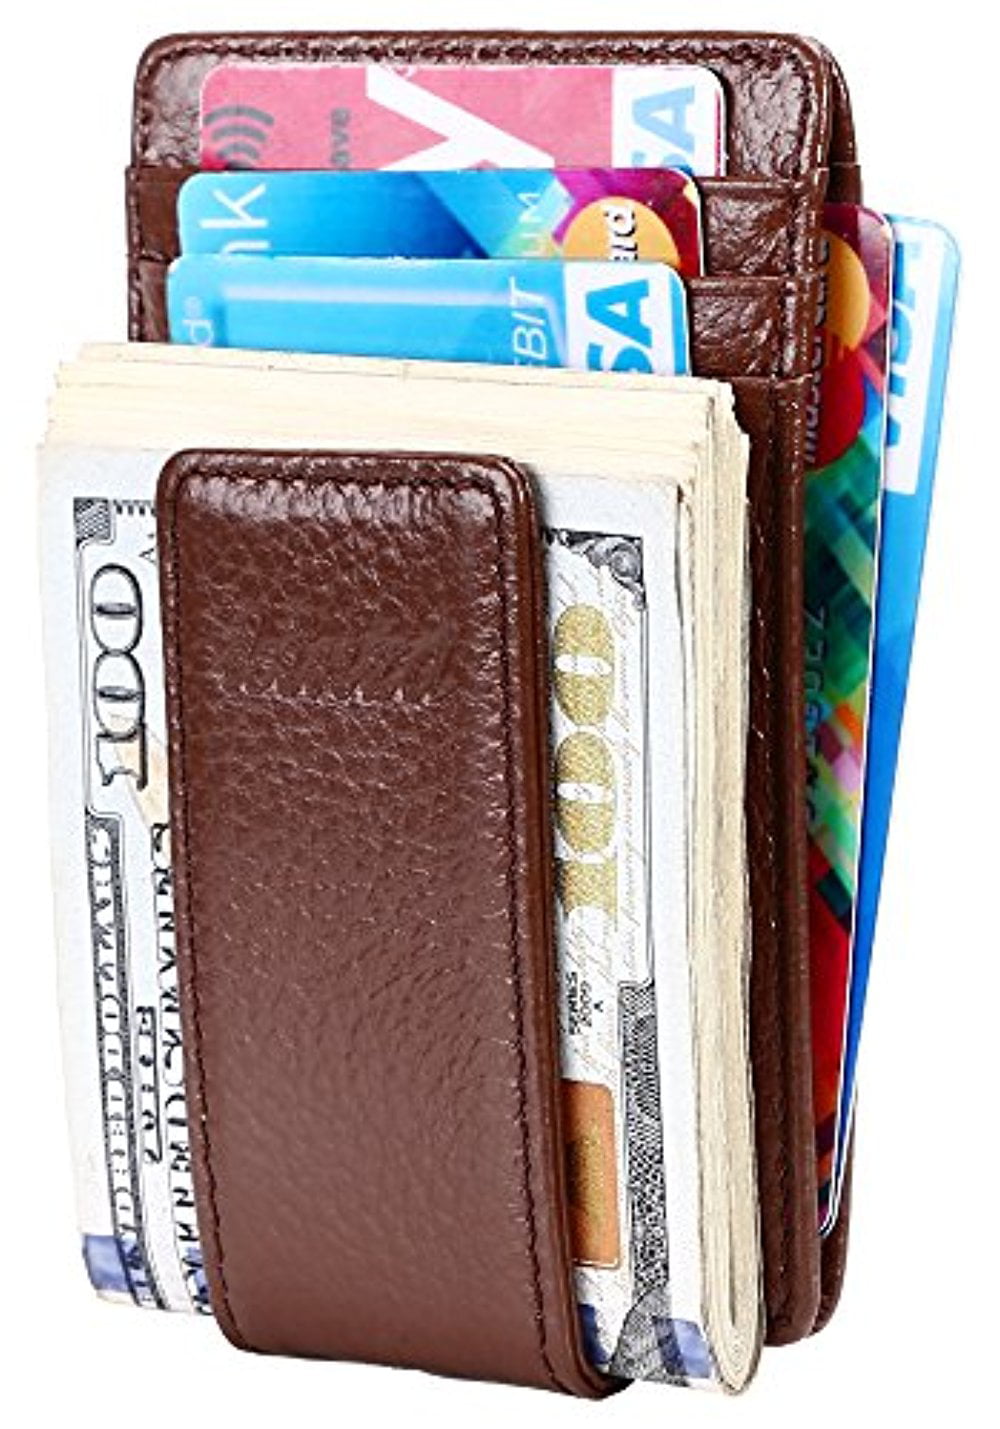 6 pocket cash wallet